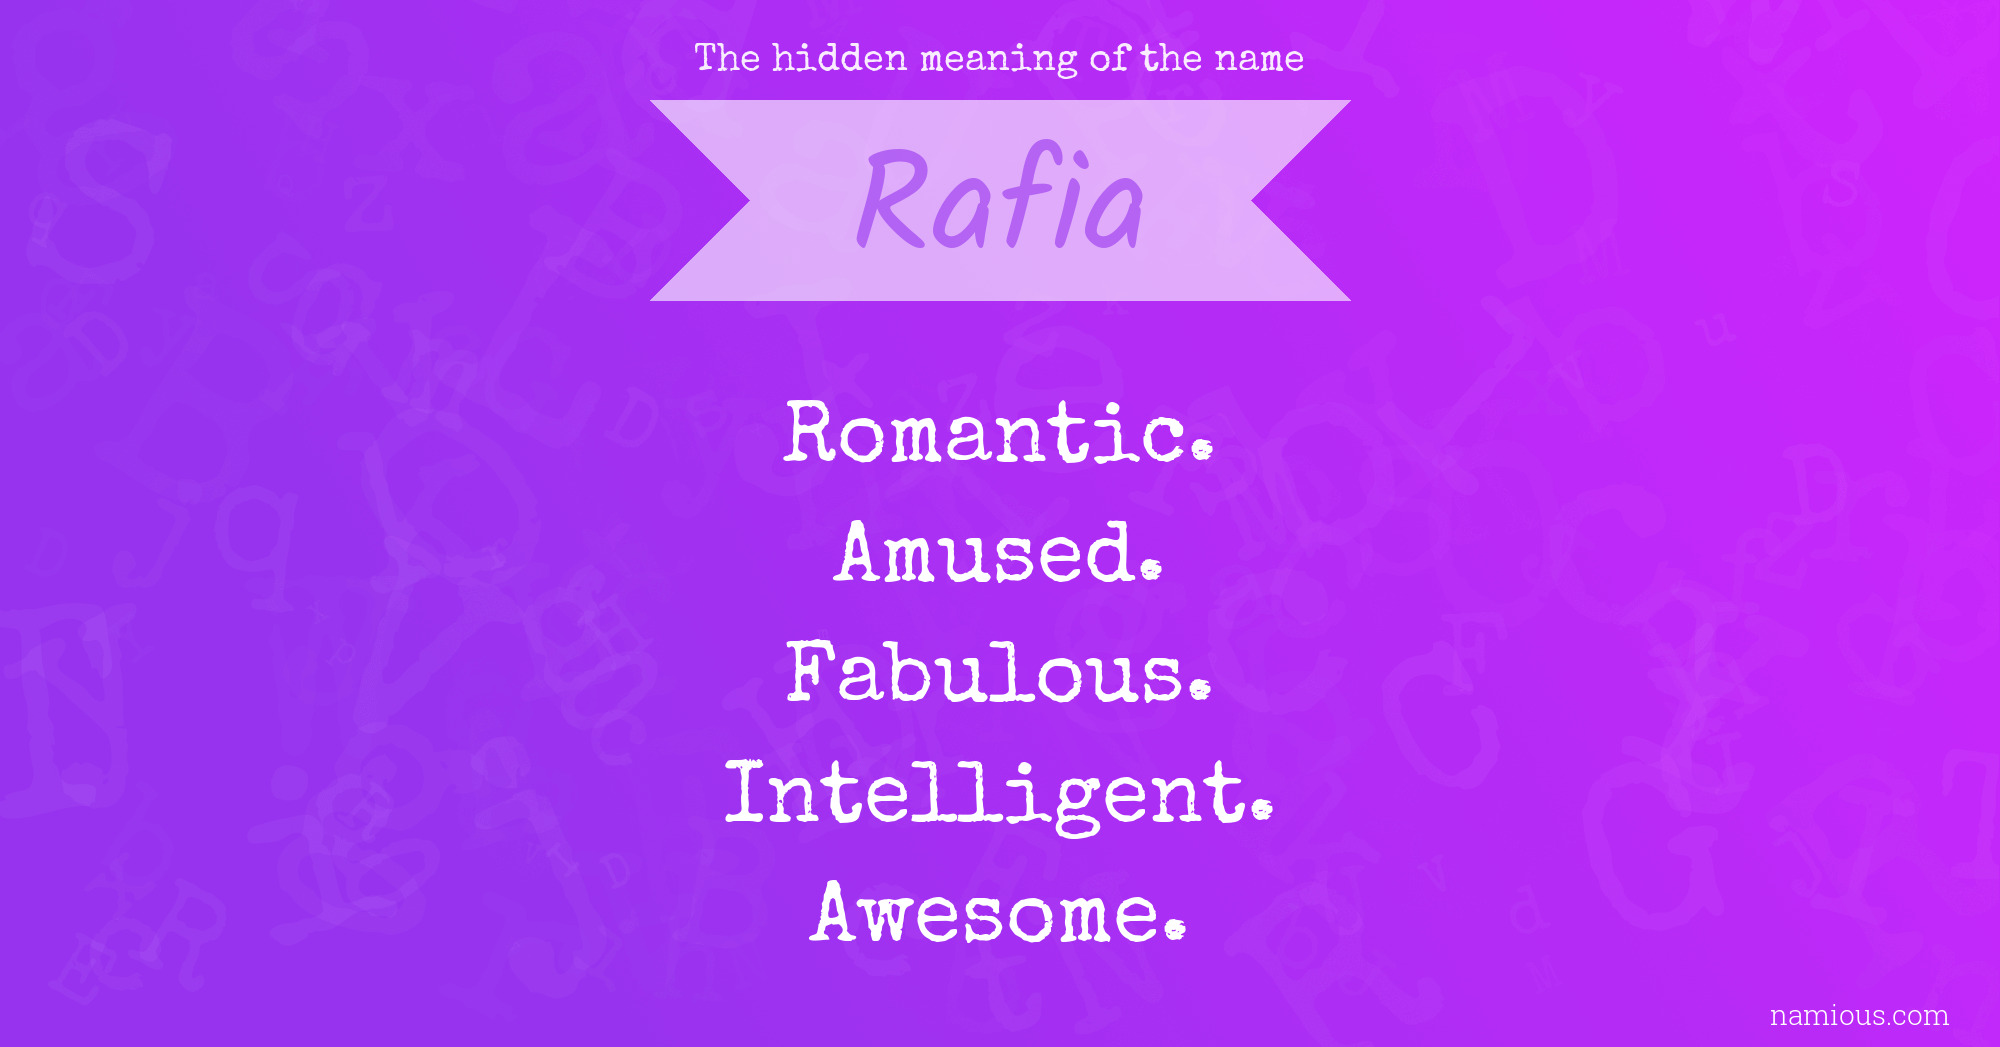 rafia name images